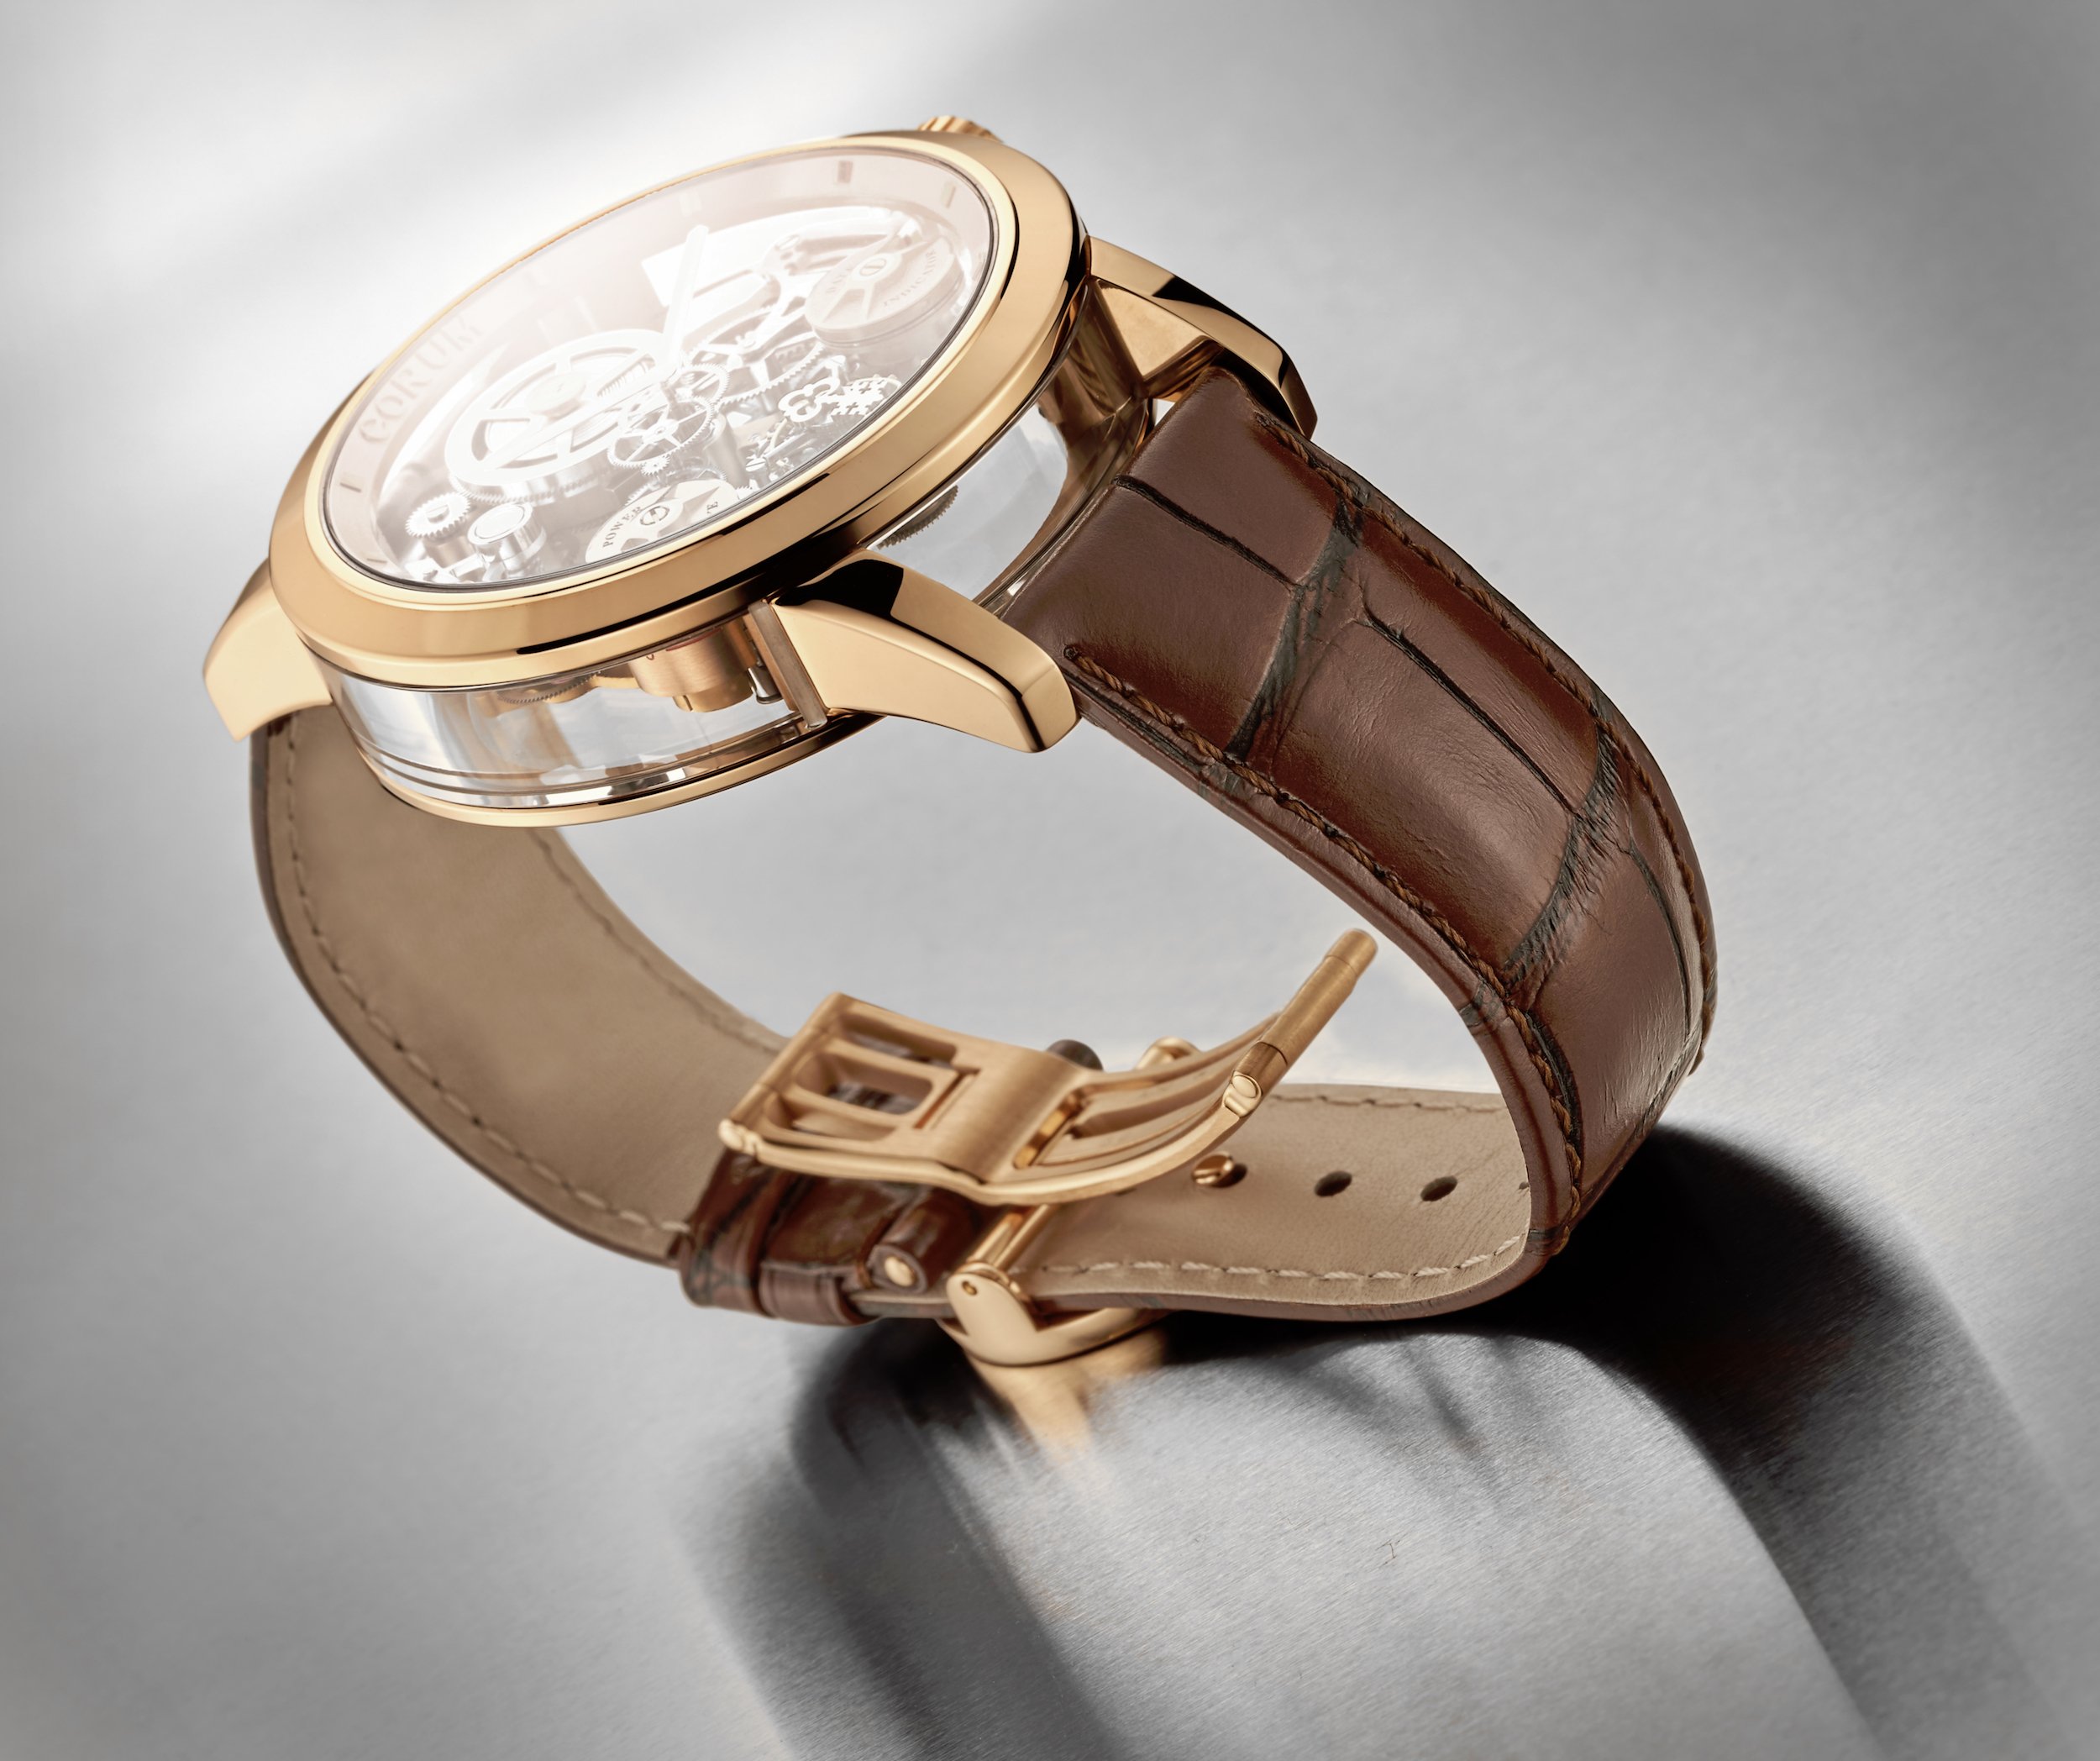 Corum unveils its disruptive Lab 02 timepiece